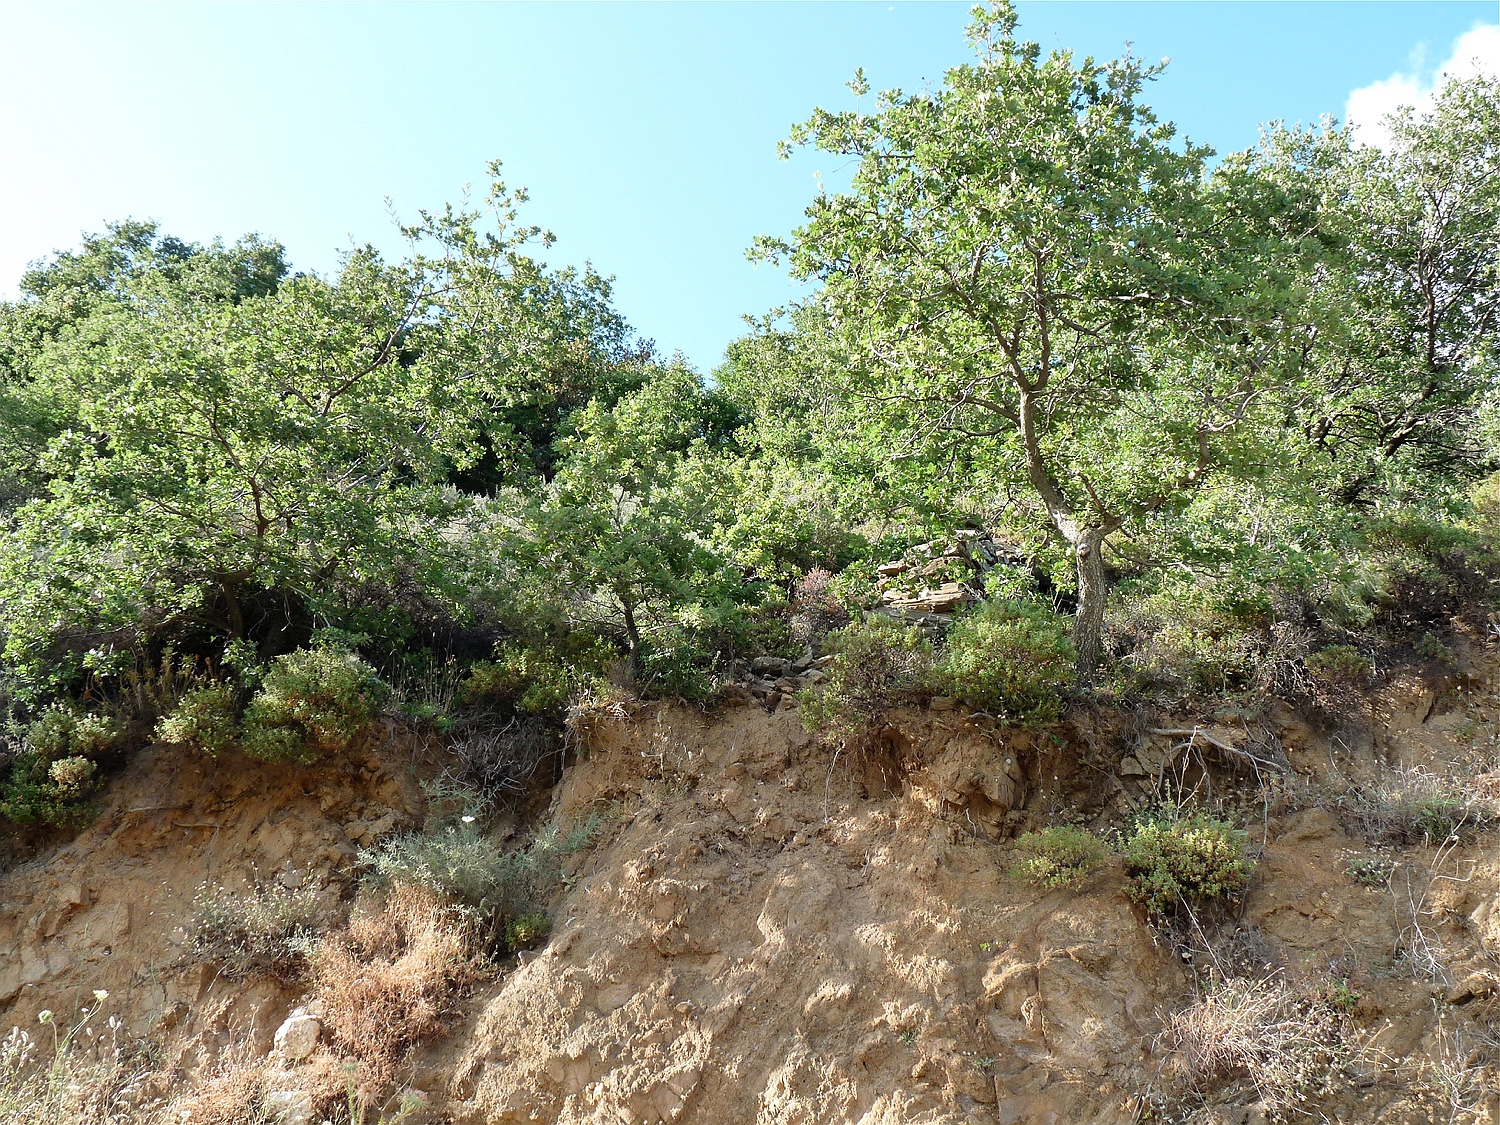 Flaumeiche, Quercus pubescens